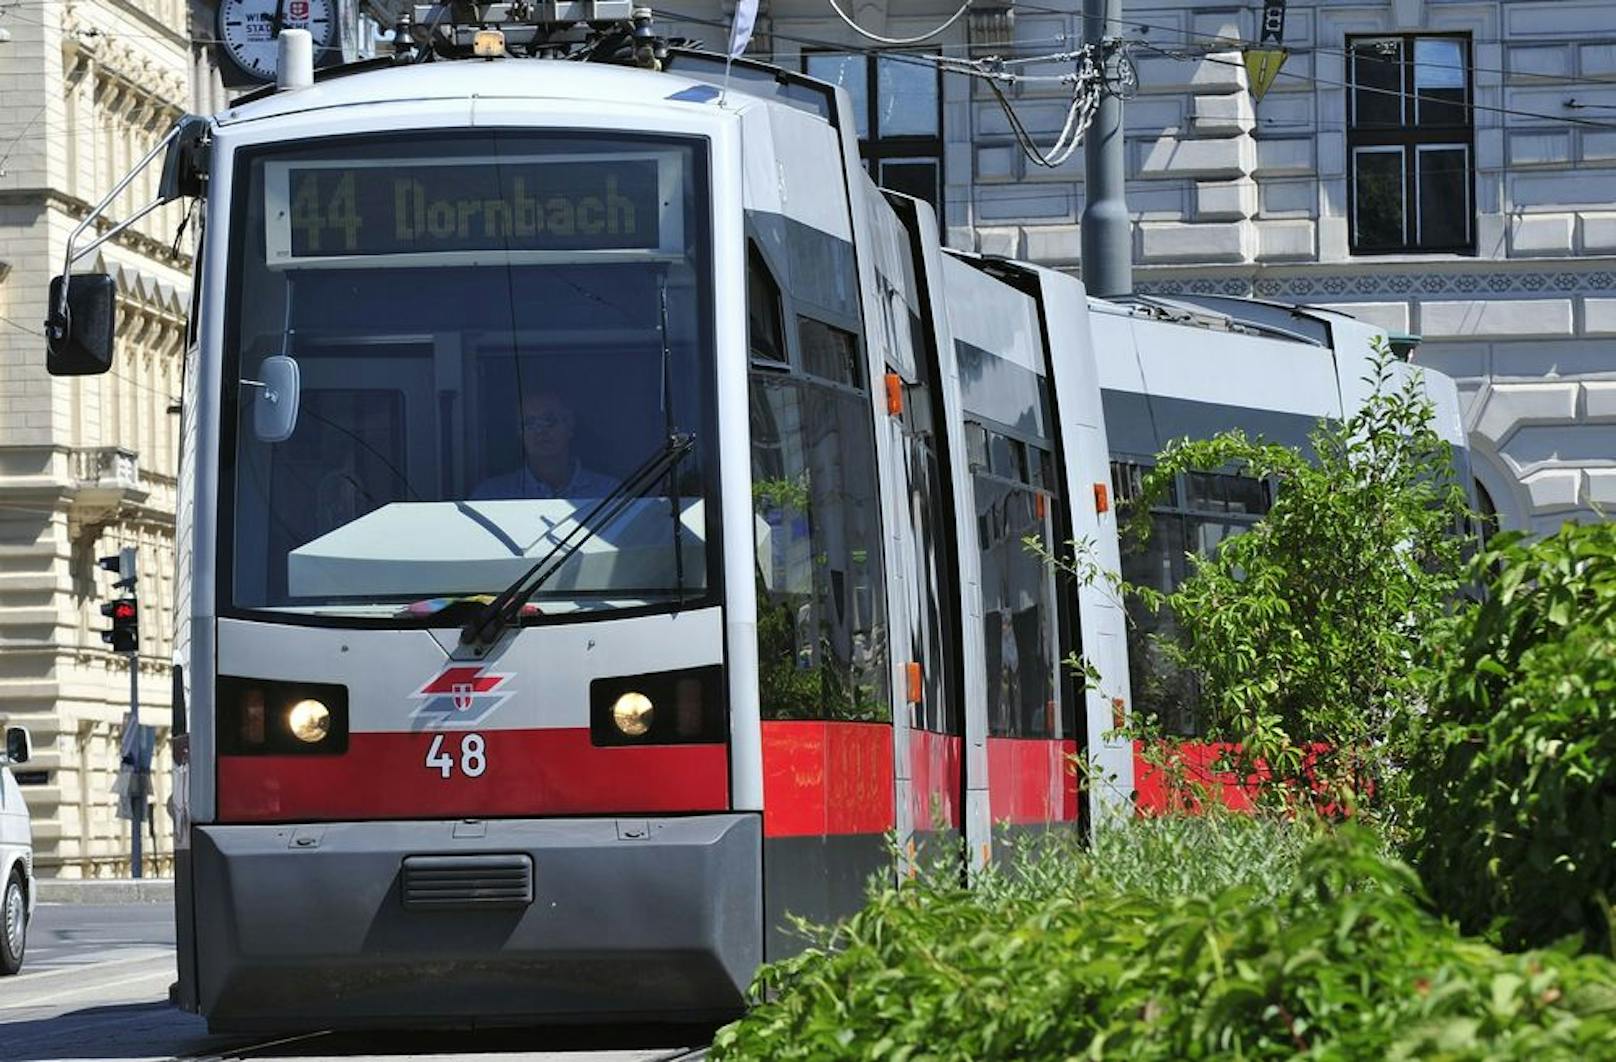 Ab 19. April fahren alle Straßenbahnlinien in Wien wieder regulär. Grund für die Rückkehr zum normalen Fahrplan sind die sinkenden Corona-Zahlen.&nbsp;